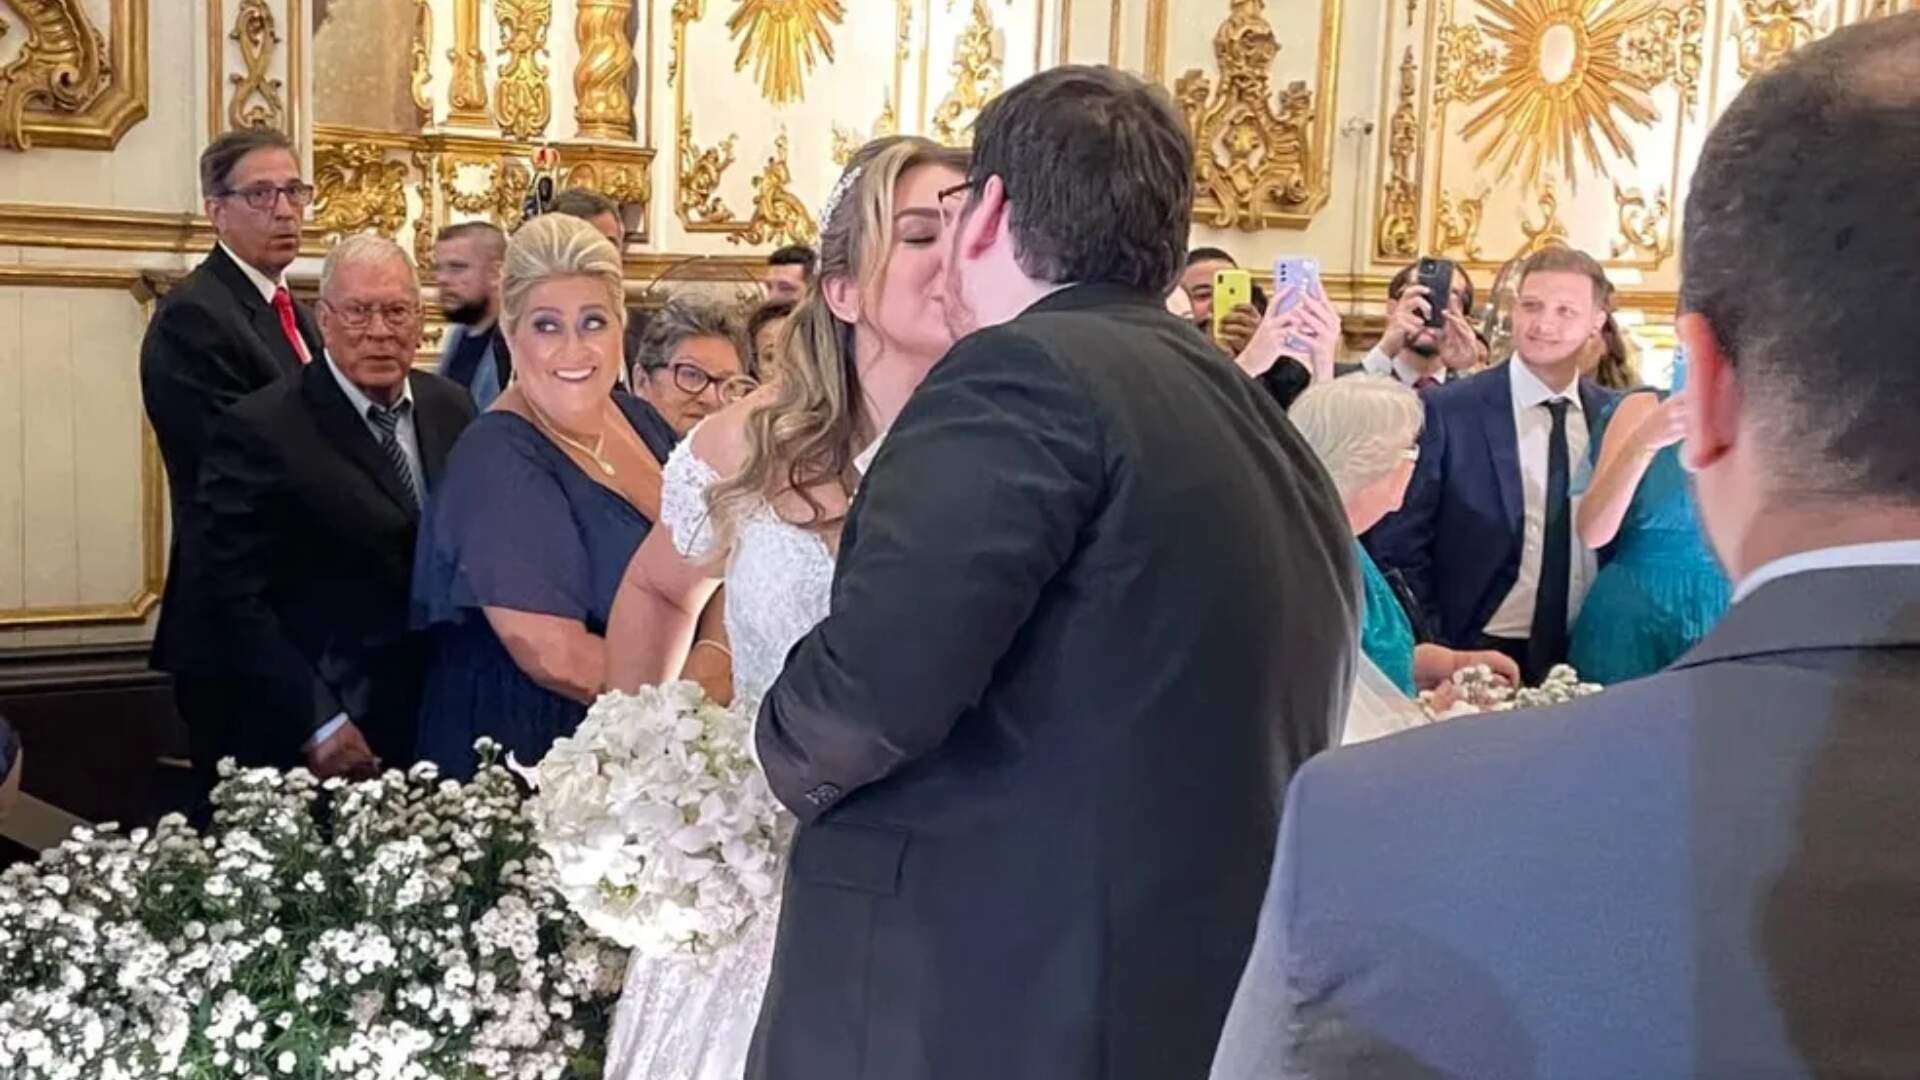 Sucesso! Casimiro Miguel e Anna Beatriz se casam no Rio de Janeiro - Metropolitana FM